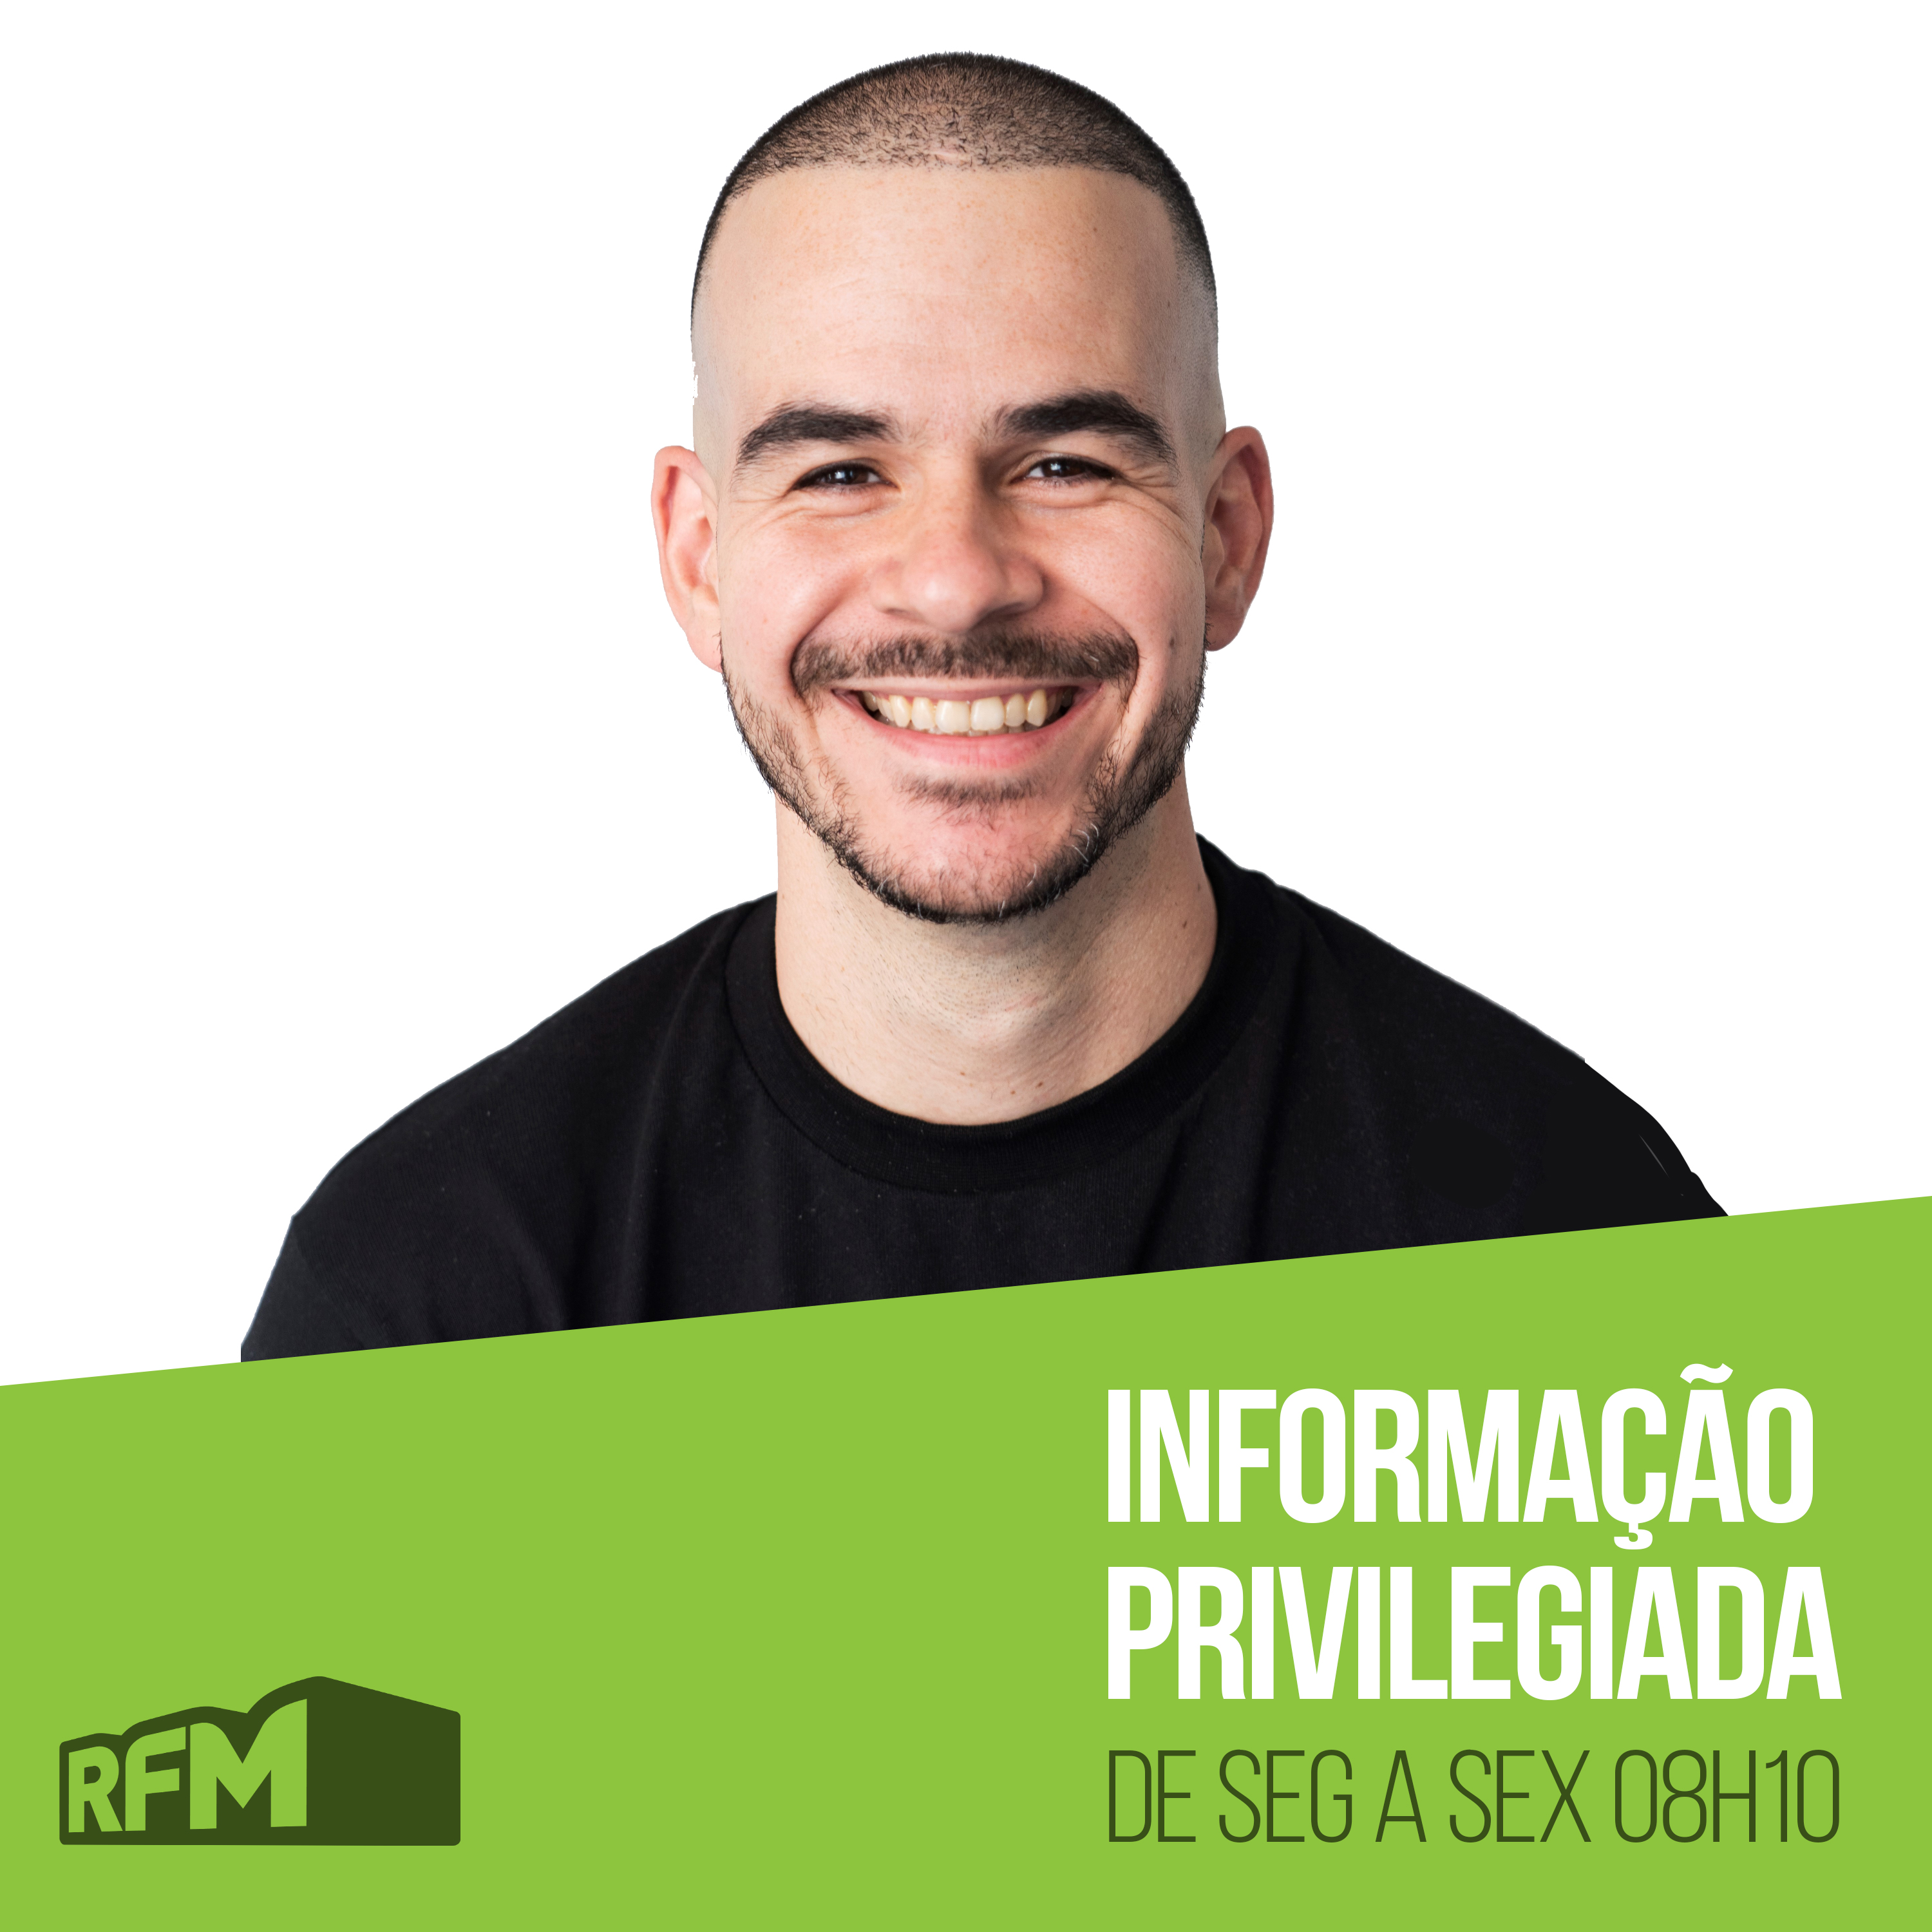 RFM - INFORMAÇÃO PRIVILEGIADA: LUÍS NAO SABE ANDAR DE BICICLETA